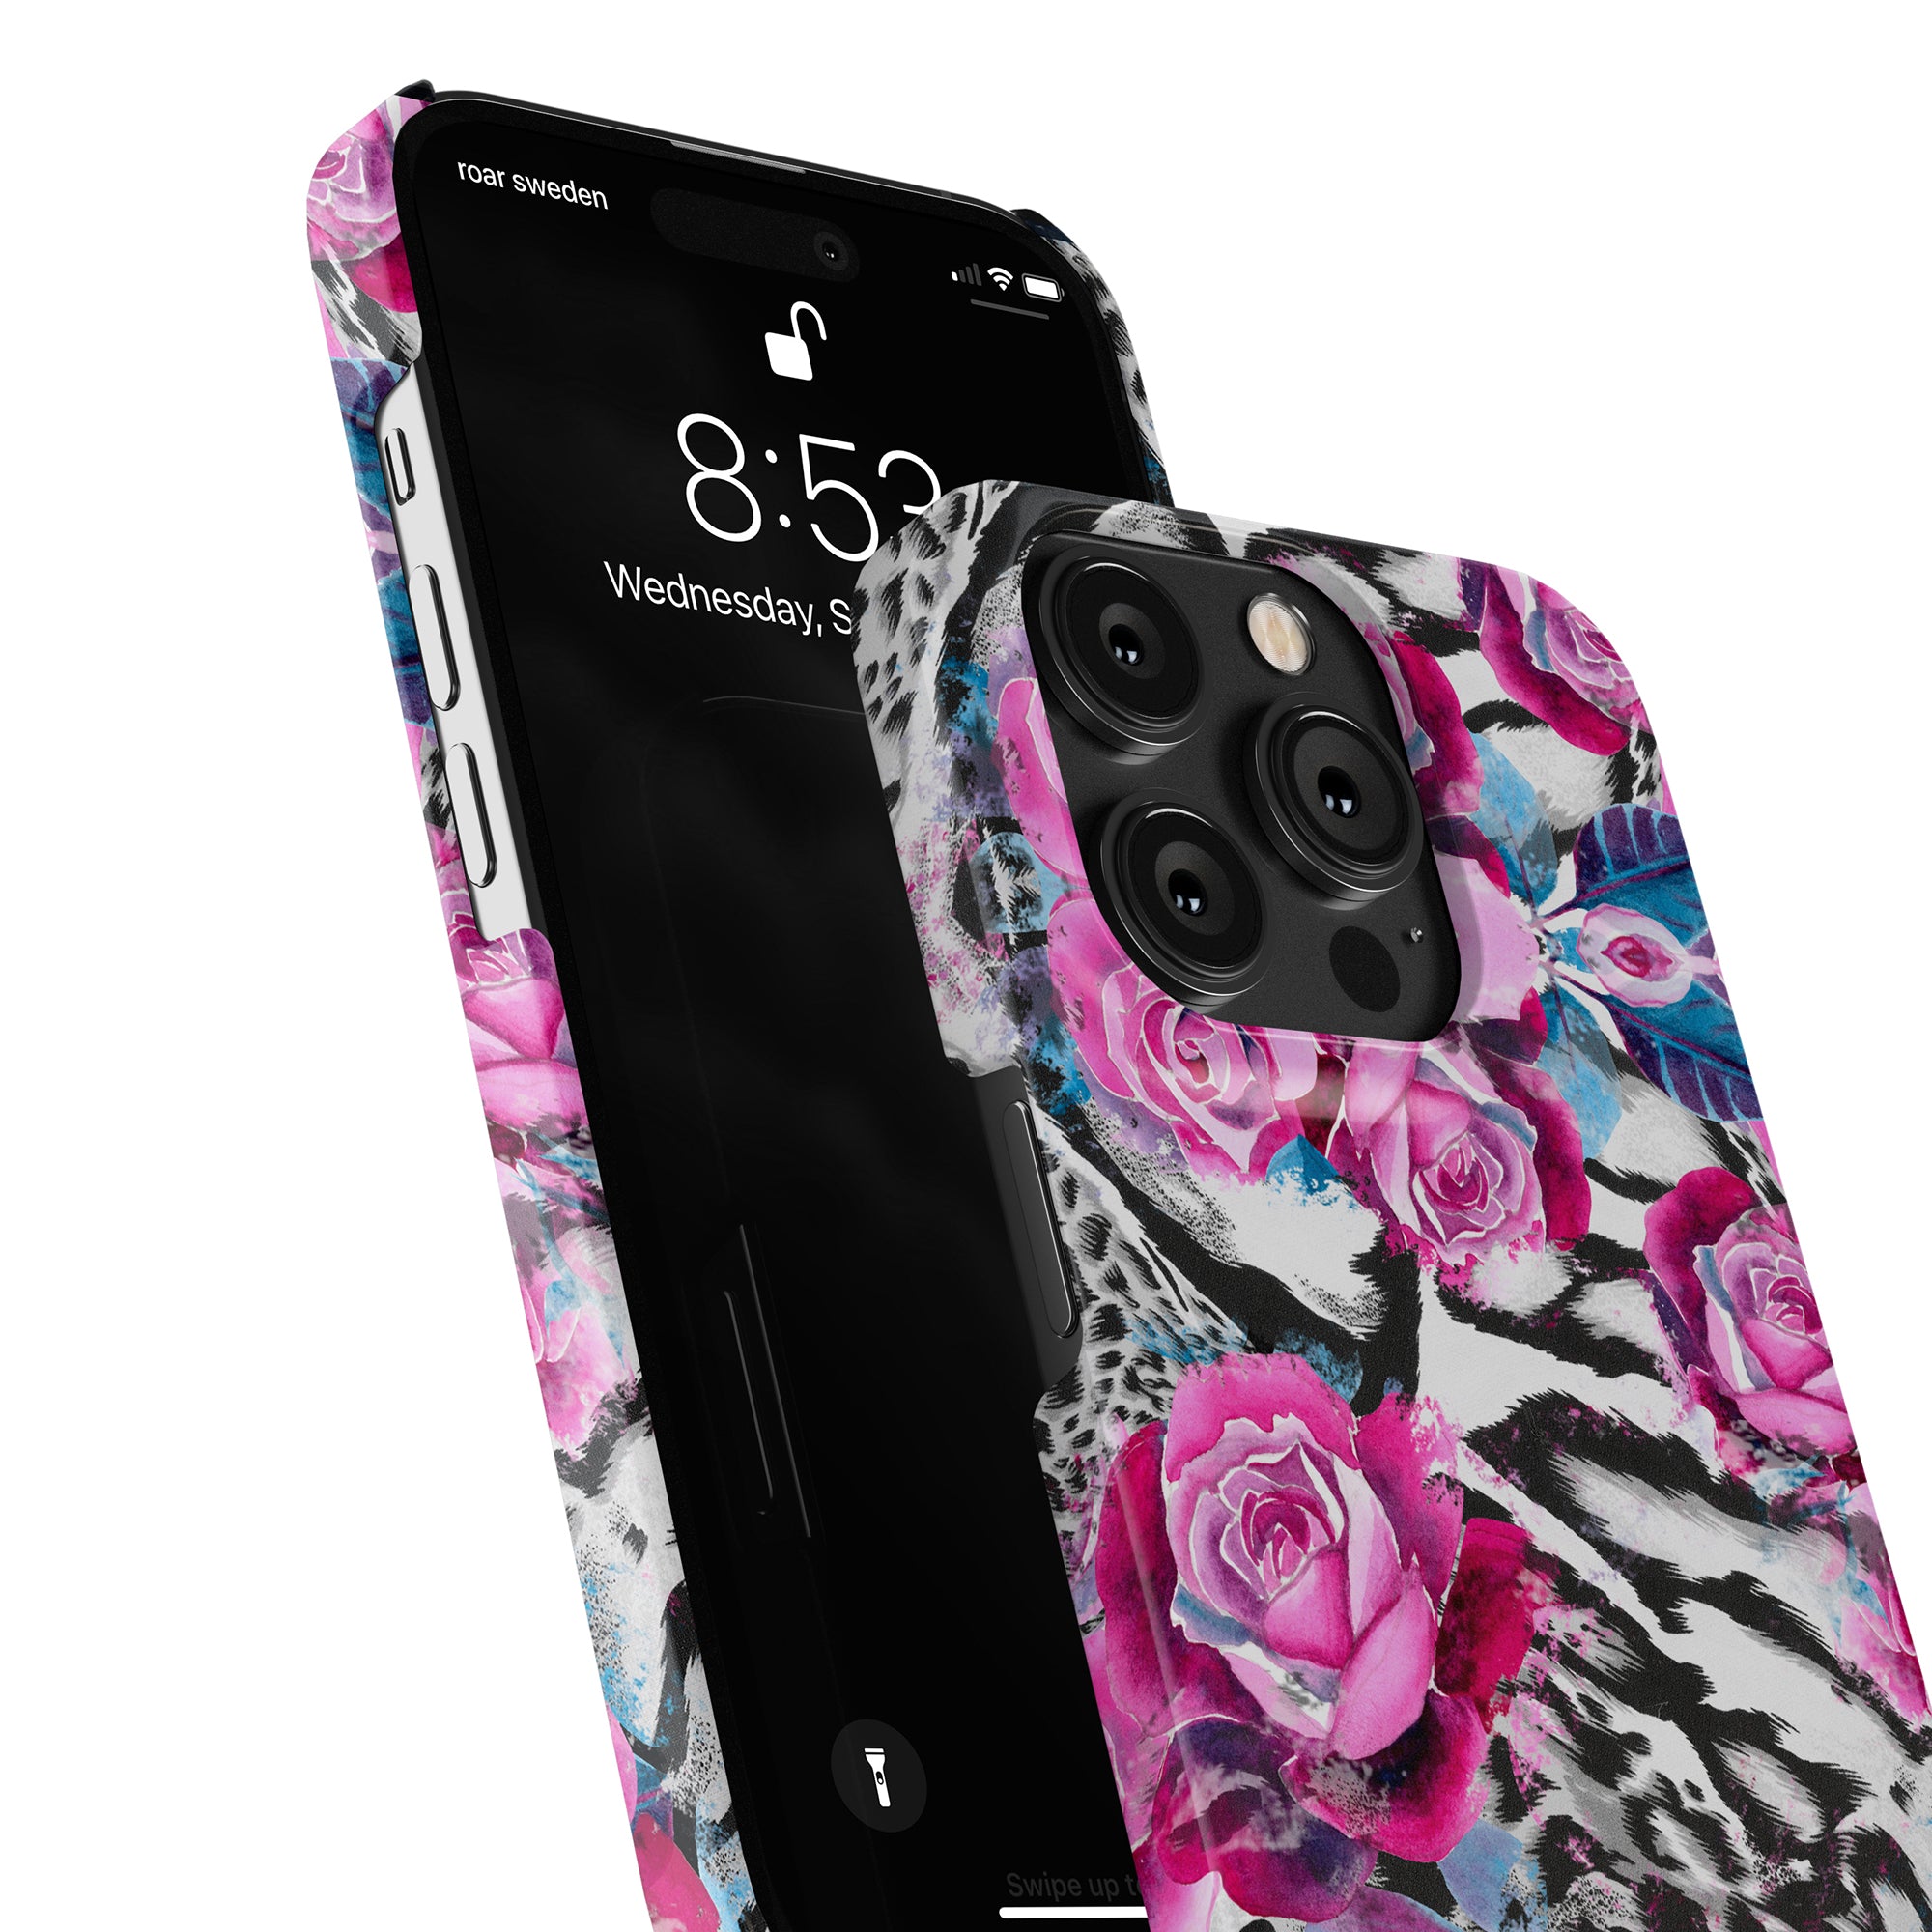 Produktbeskrivning: Lyft upp din iPhone 11 med Rosy Wildcat - Slim fodral med härliga rosa rosor. Detta utsökta iPhone-tillbehör kombinerar sömlöst mode och funktionalitet, vilket ger ett tillförlitligt skydd för din enhet samtidigt som du visar upp din kärlek till blommor.